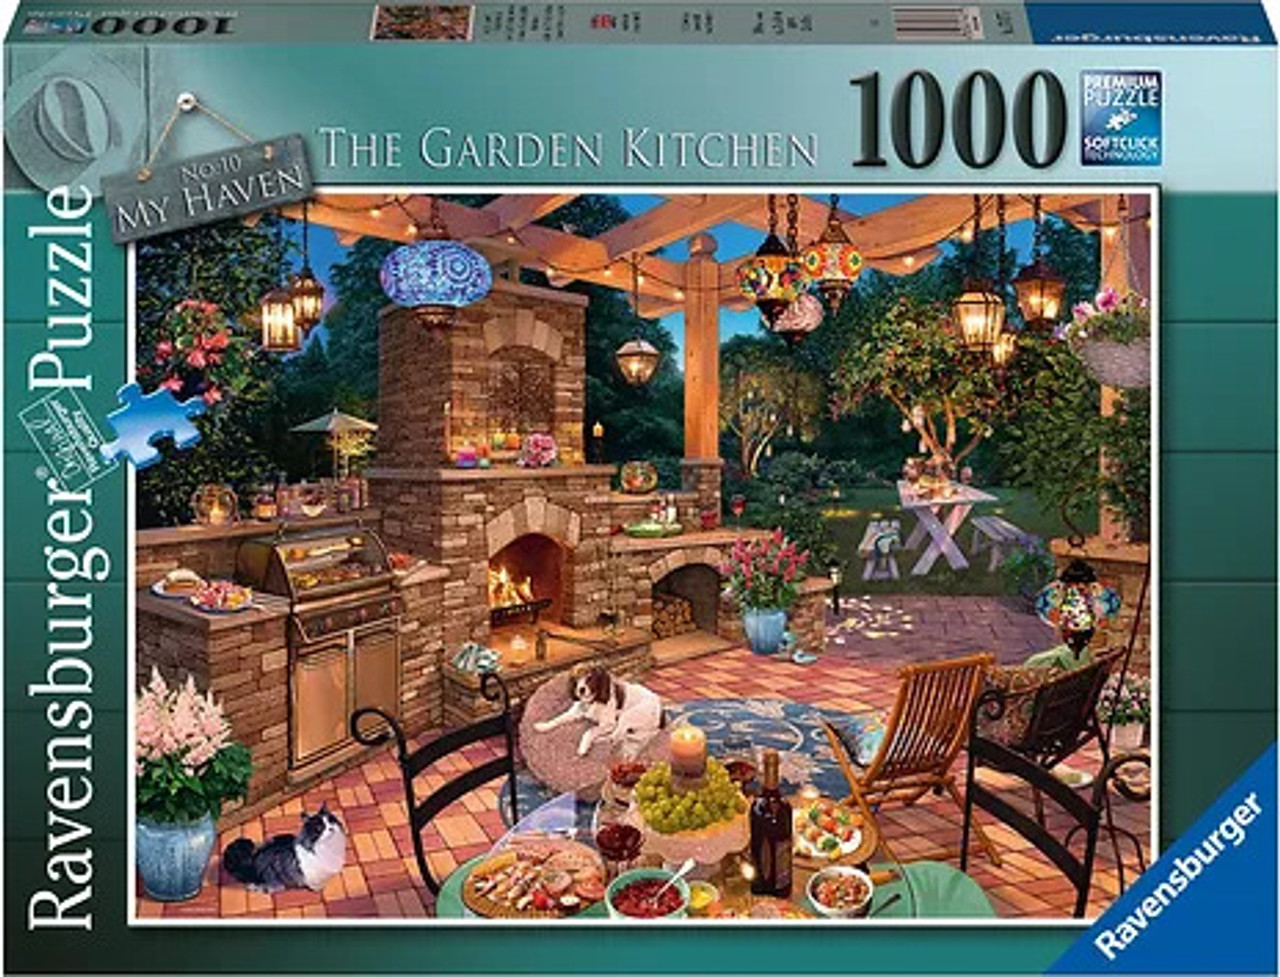 The Garden Kitchen (1000 Piece Puzzle) 1